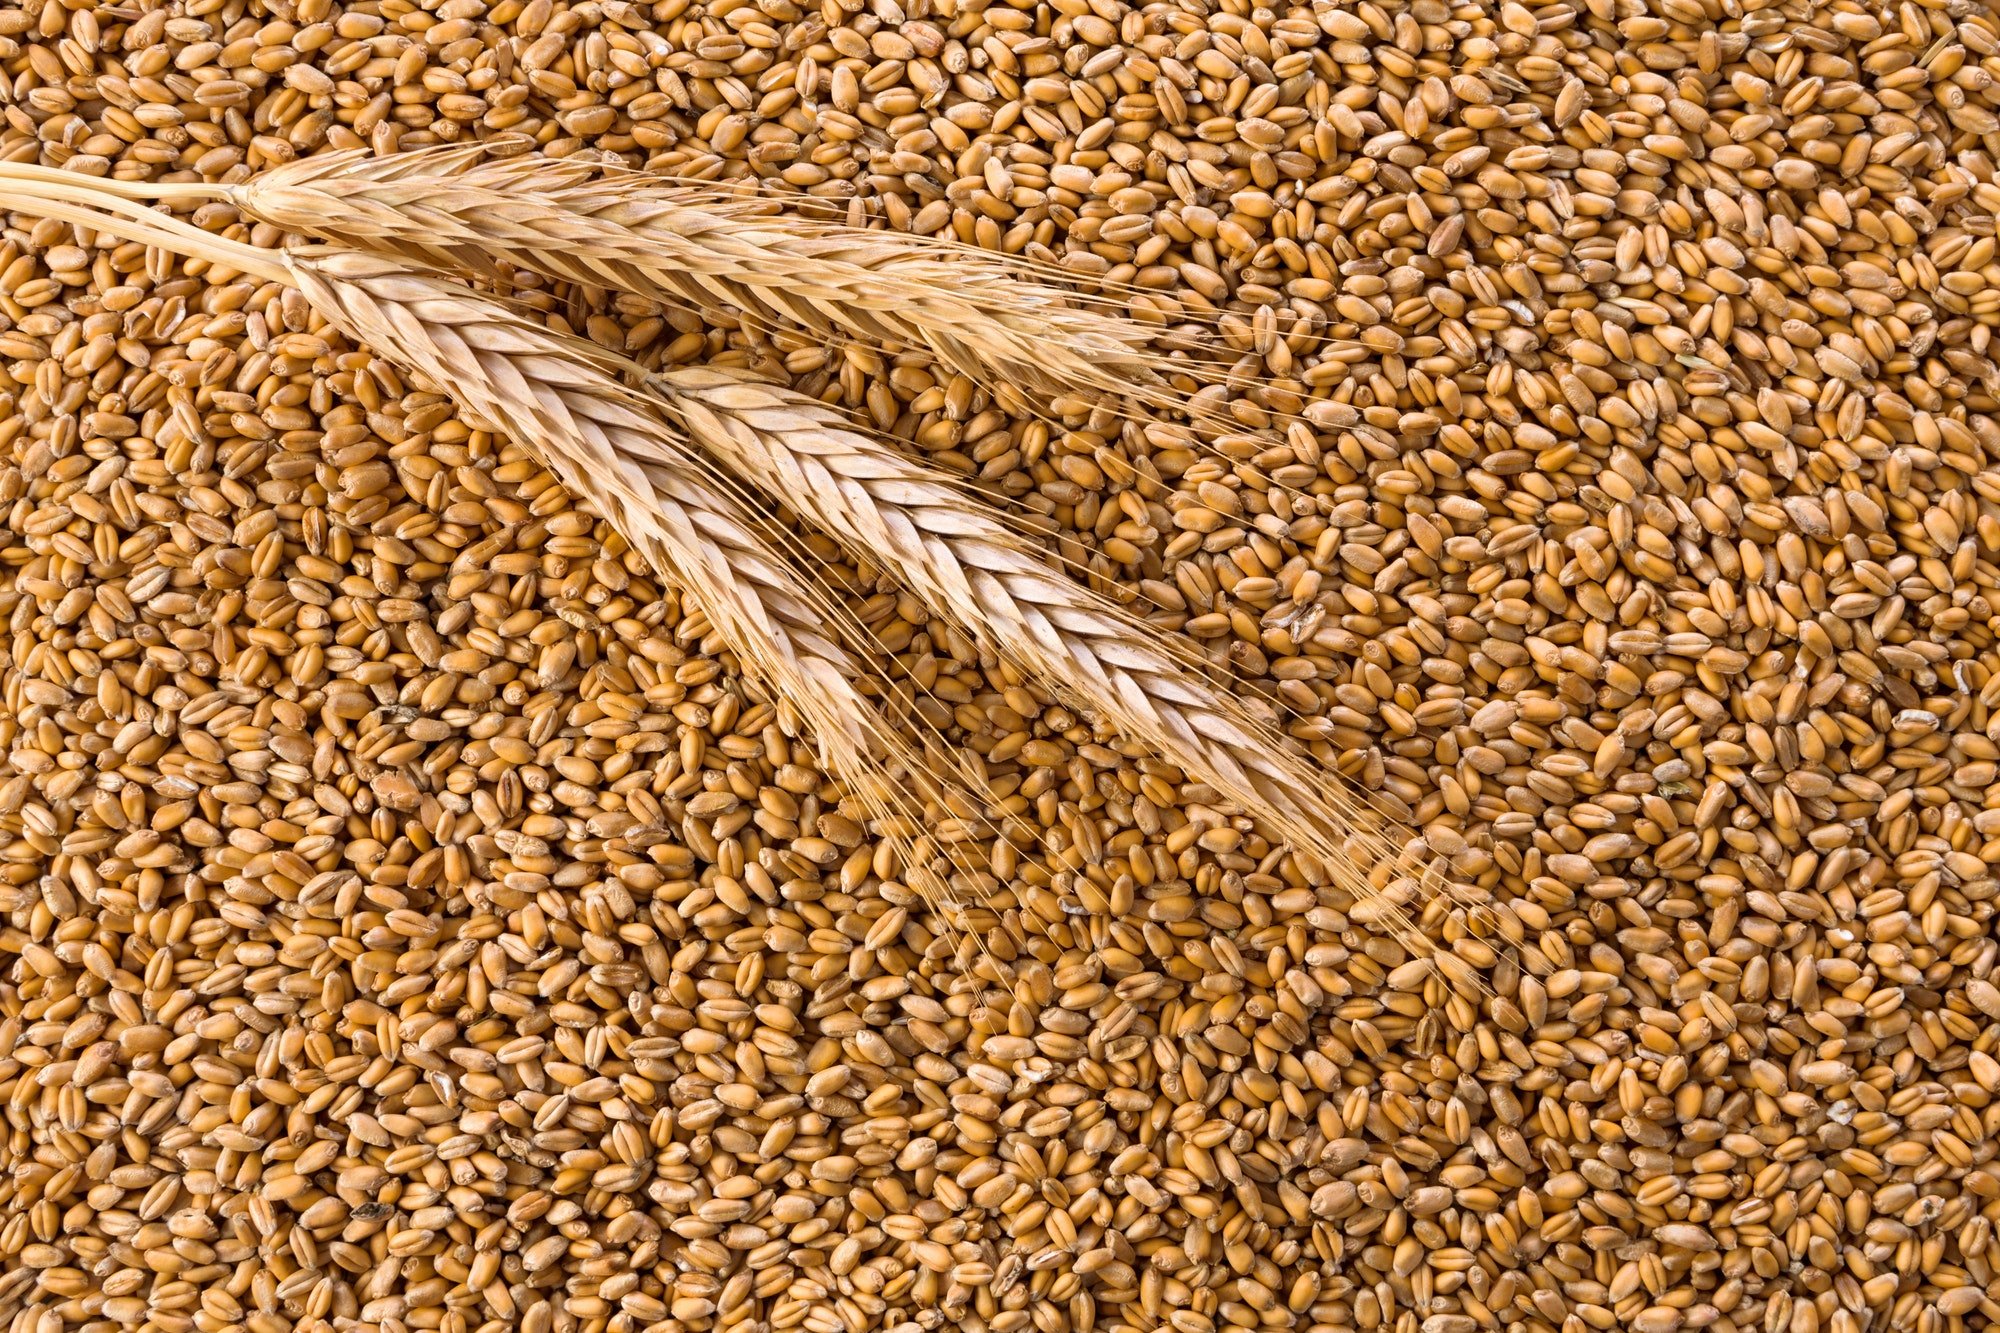 Требования к экспорту зерна в части карантинного фитосанитарного контроля и обеспечения качества и безопасности зерна